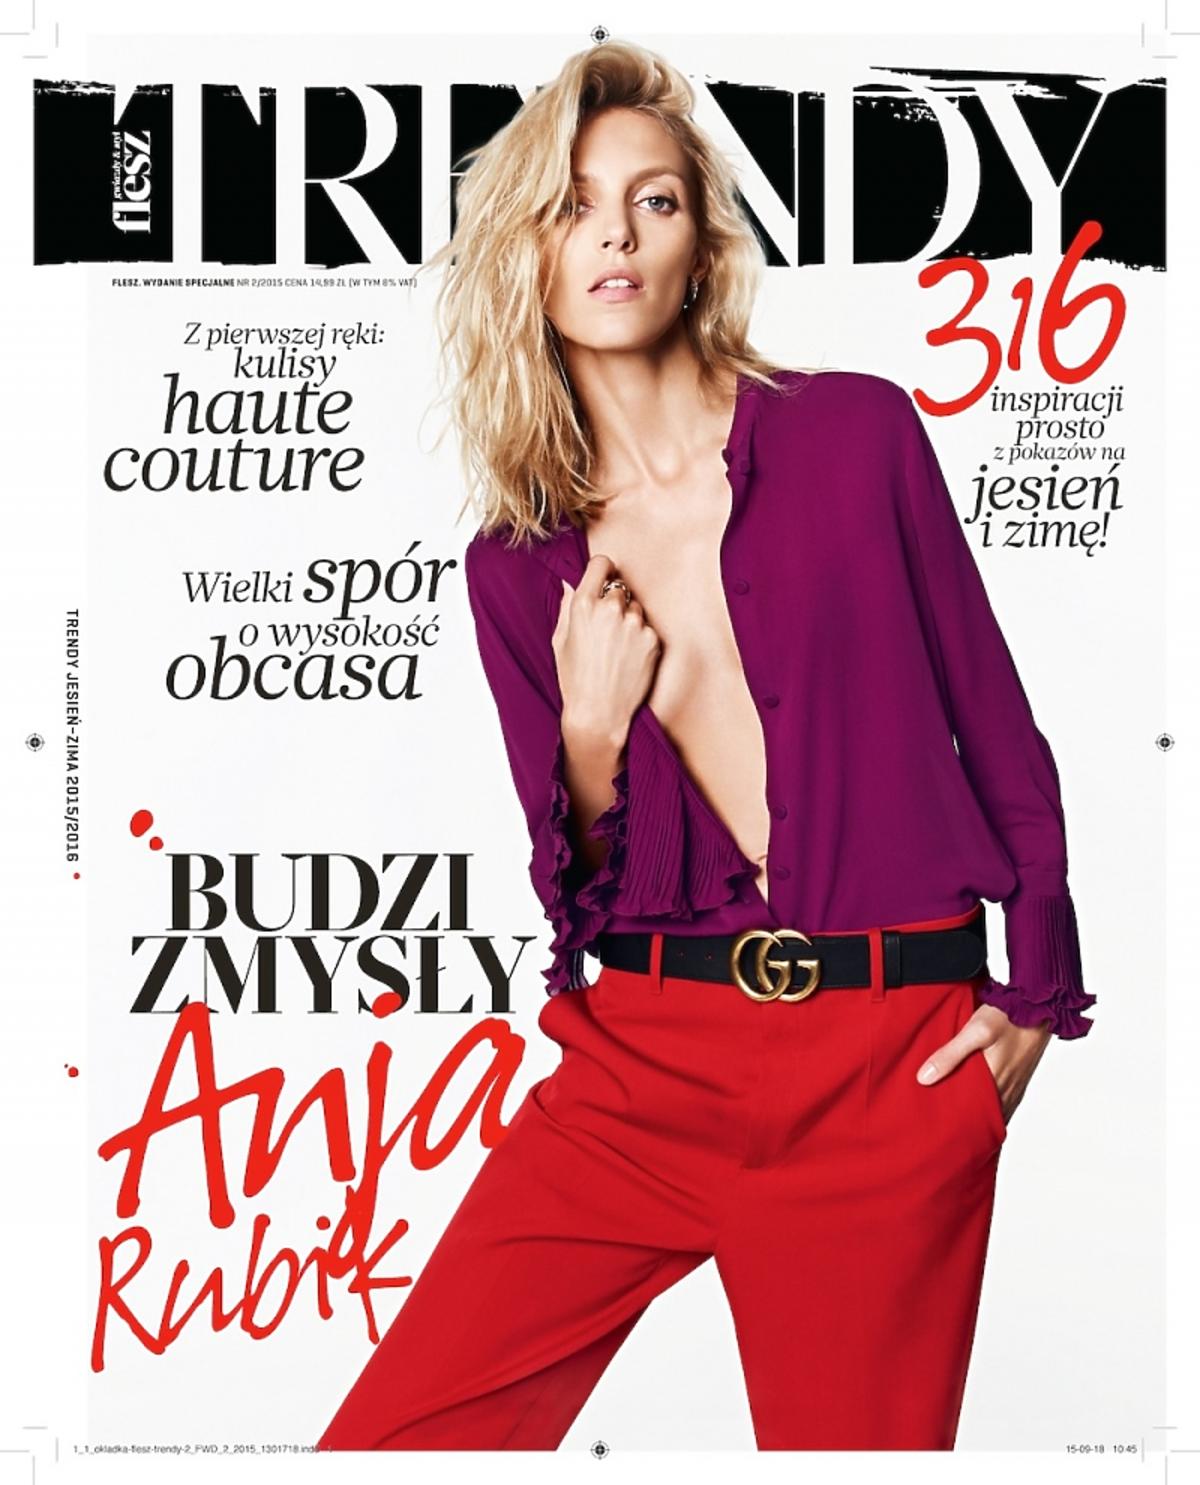 Anja Rubik na okładce magazynu Flesz Trendy w czerwoych spodniach i fioletowej koszuli